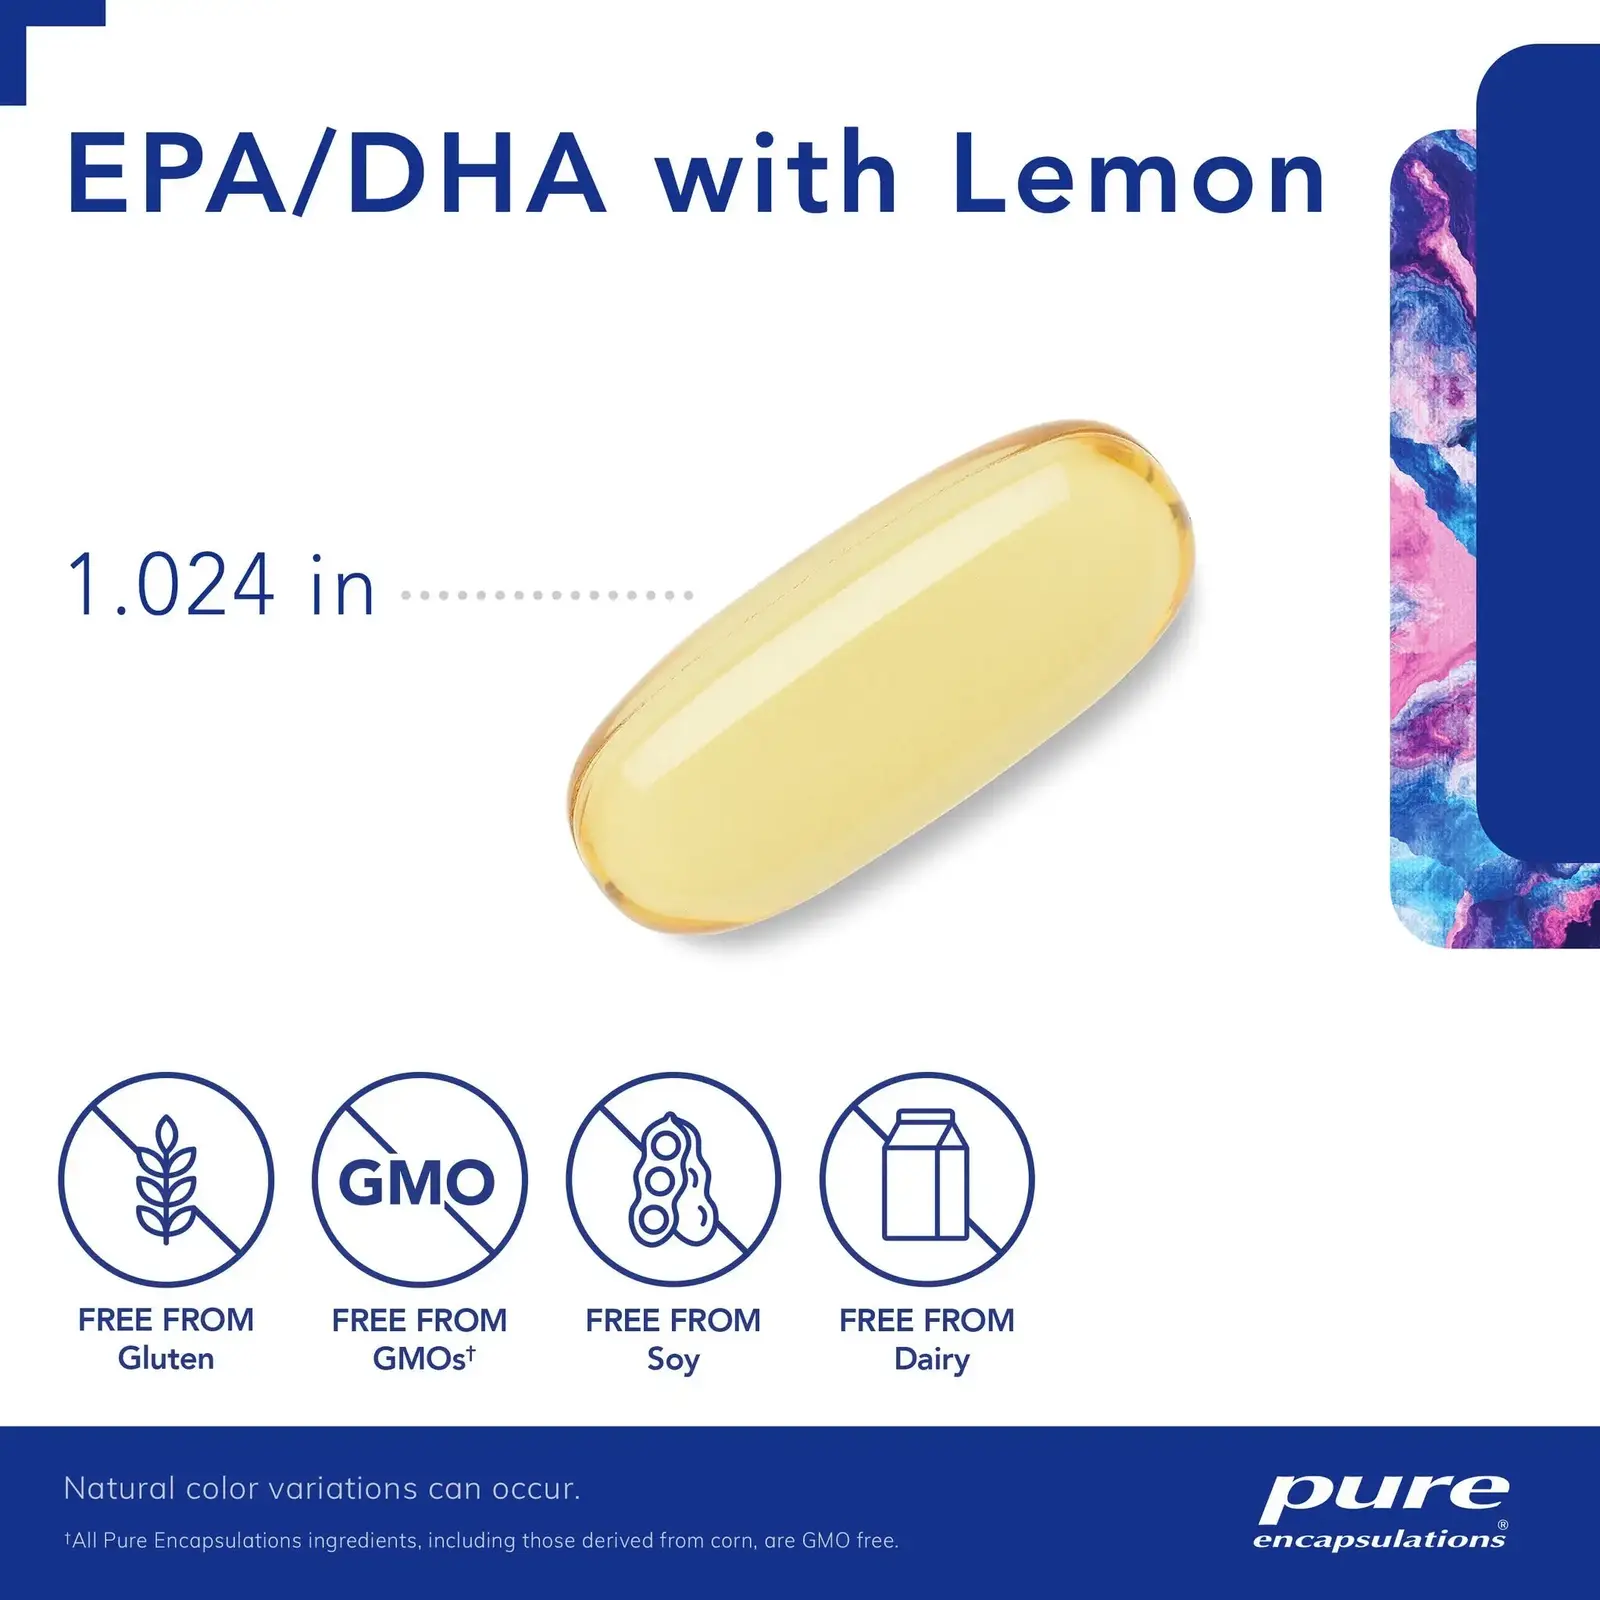 EPA/DHA with lemon